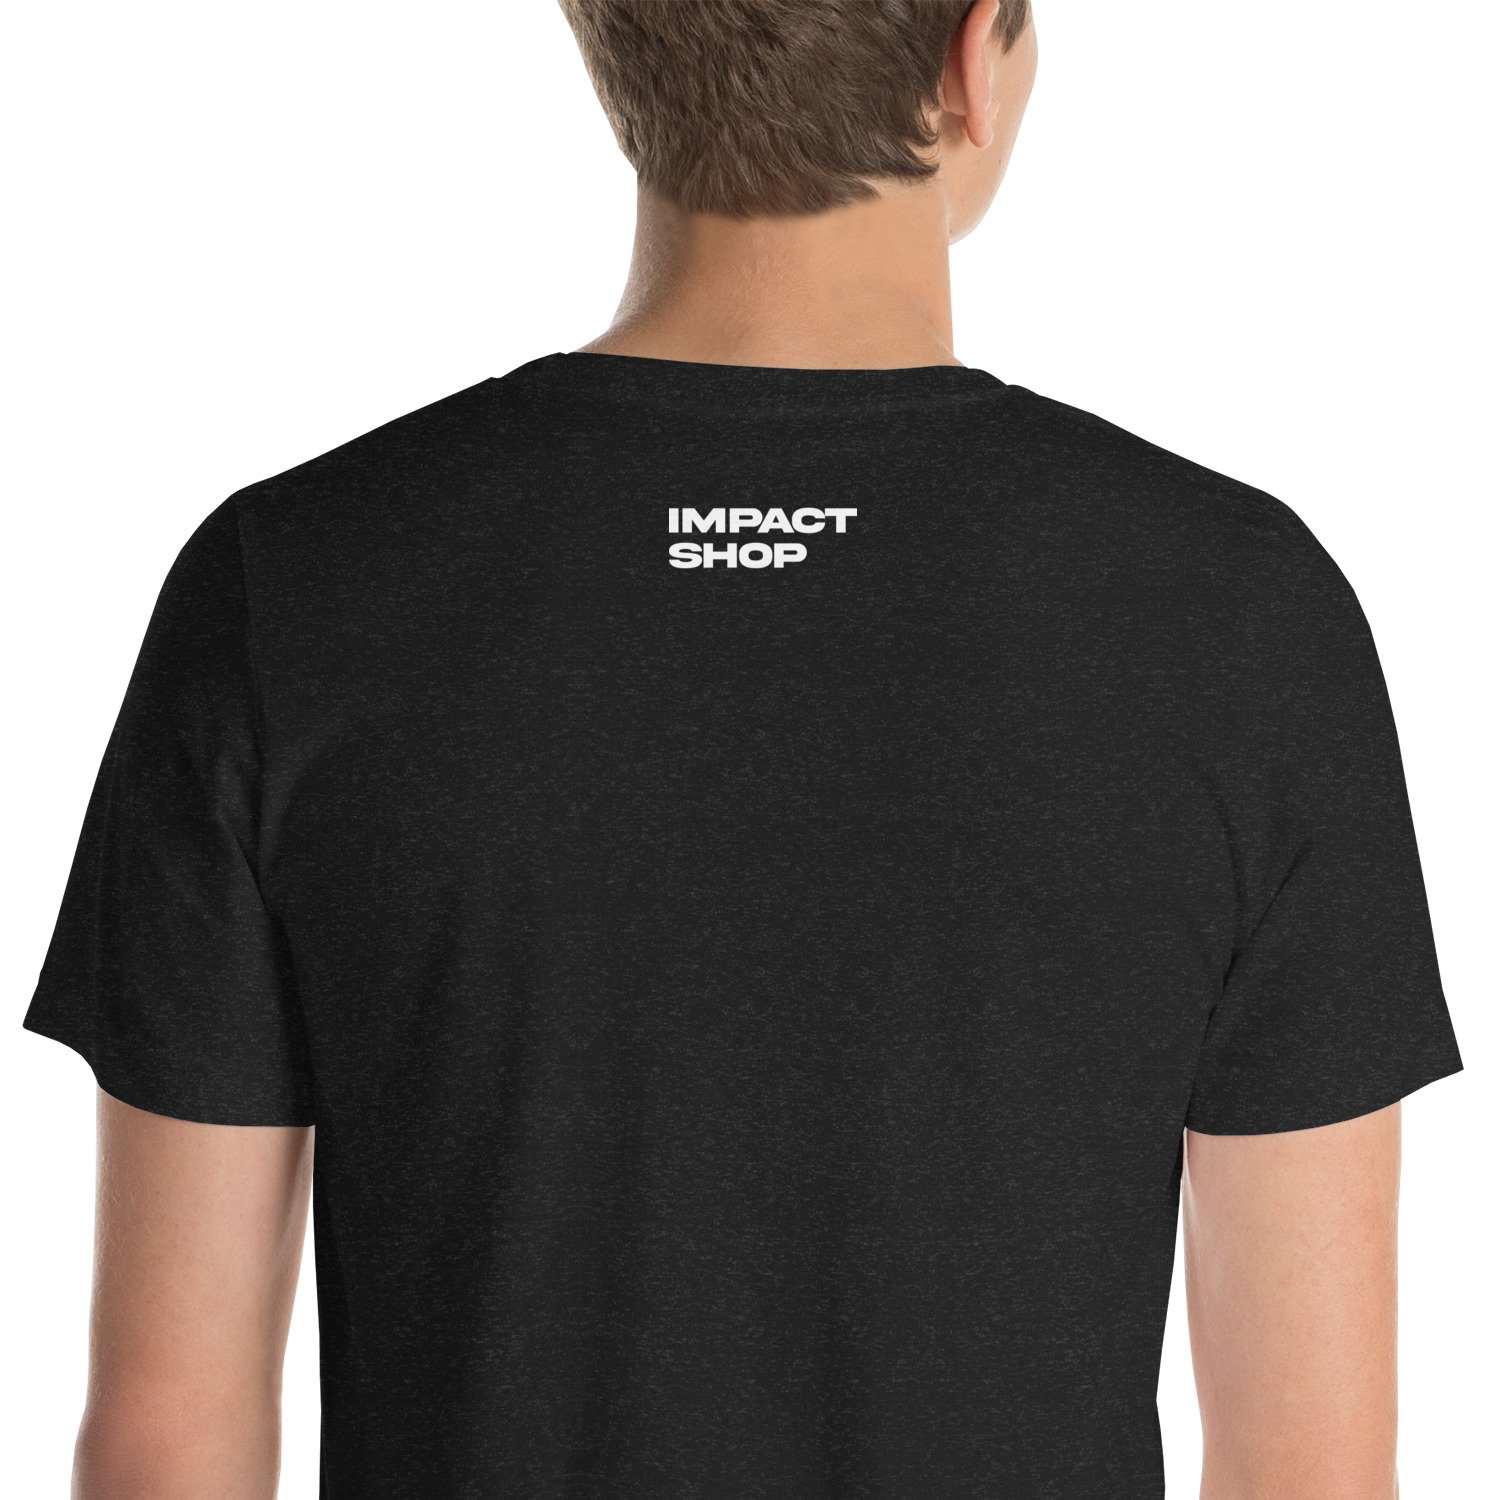 unisex-staple-t-shirt-black-heather-zoomed-in-63fced2614d21.jpg